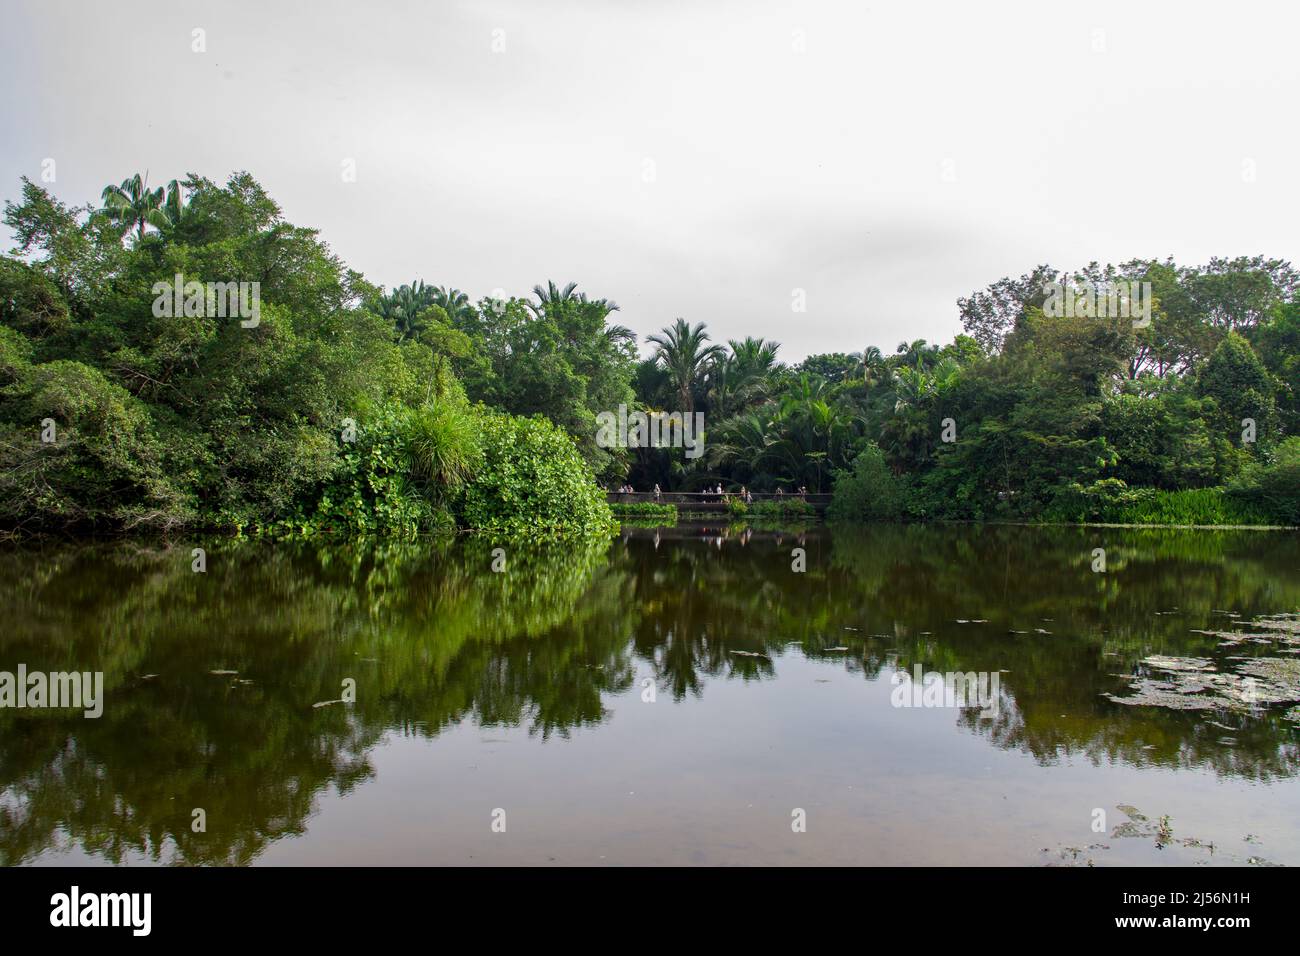 Der Blick auf den Eco Lake im Botanischen Garten Singapur. Seit 2013 zählt sie zu den beliebtesten Parks Asiens und wurde als UNESCO-Weltkulturerbe ausgezeichnet Stockfoto